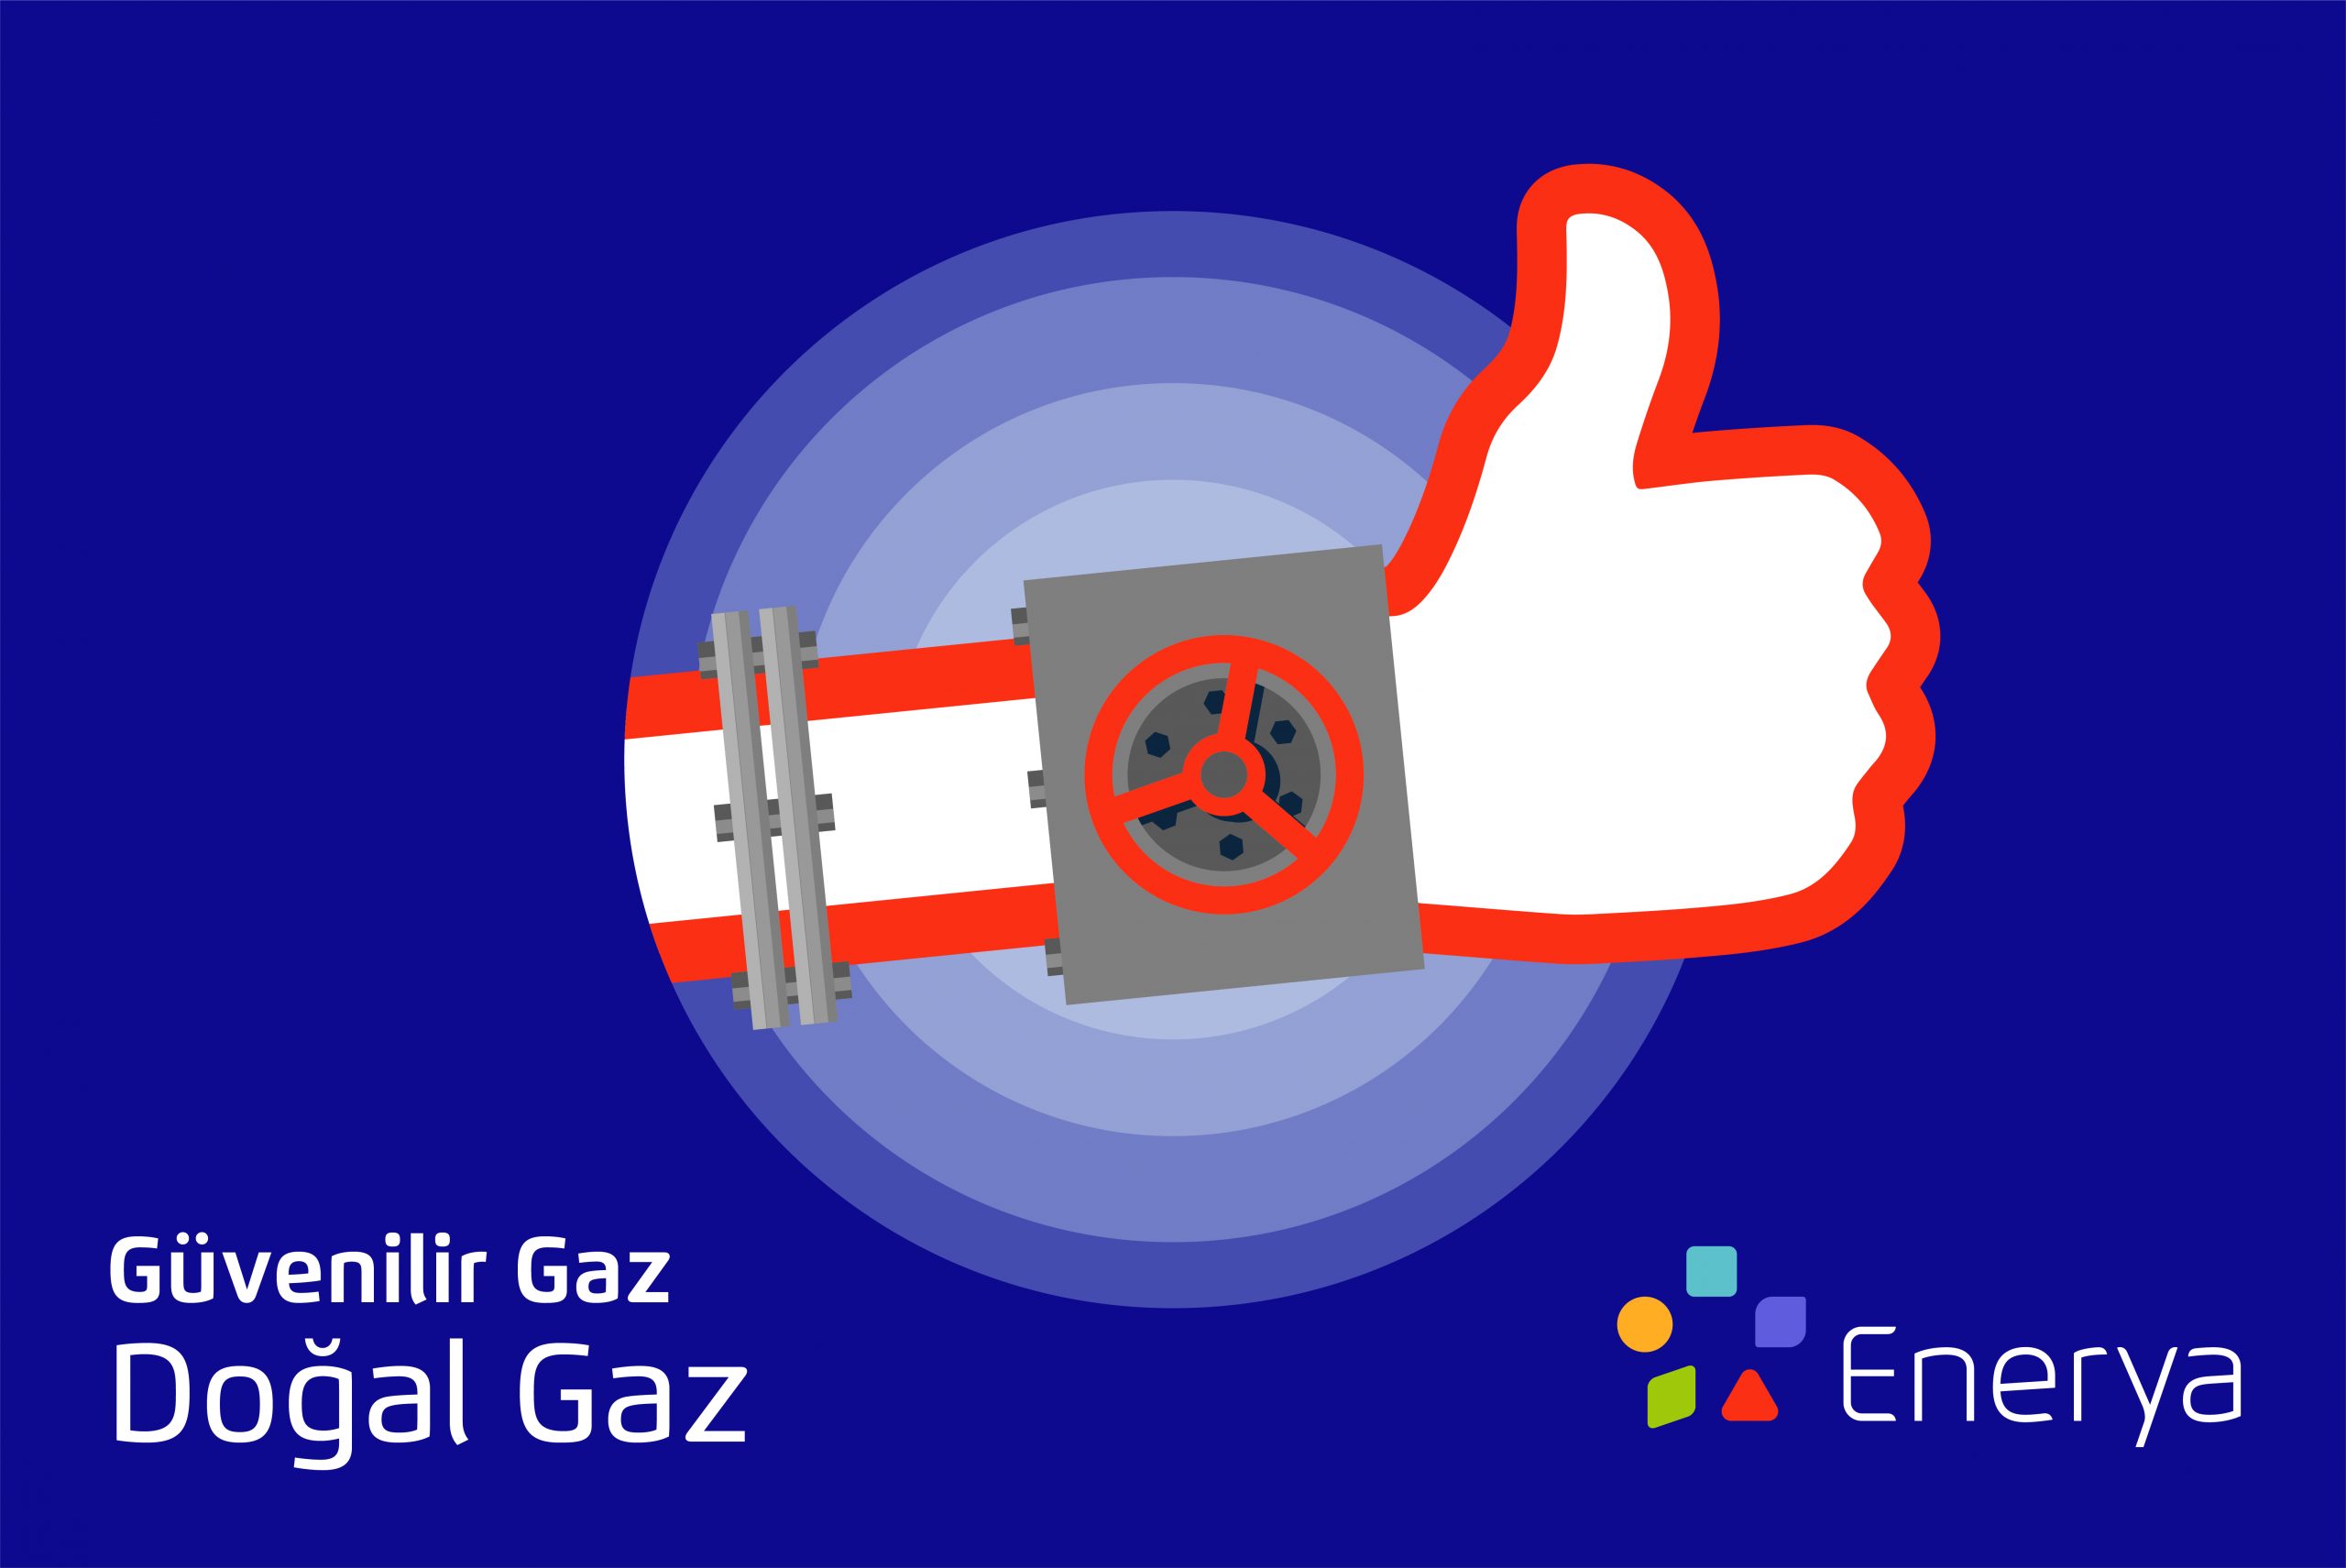 Enerya, güvenli doğal gaz kullanım rehberini açıkladı